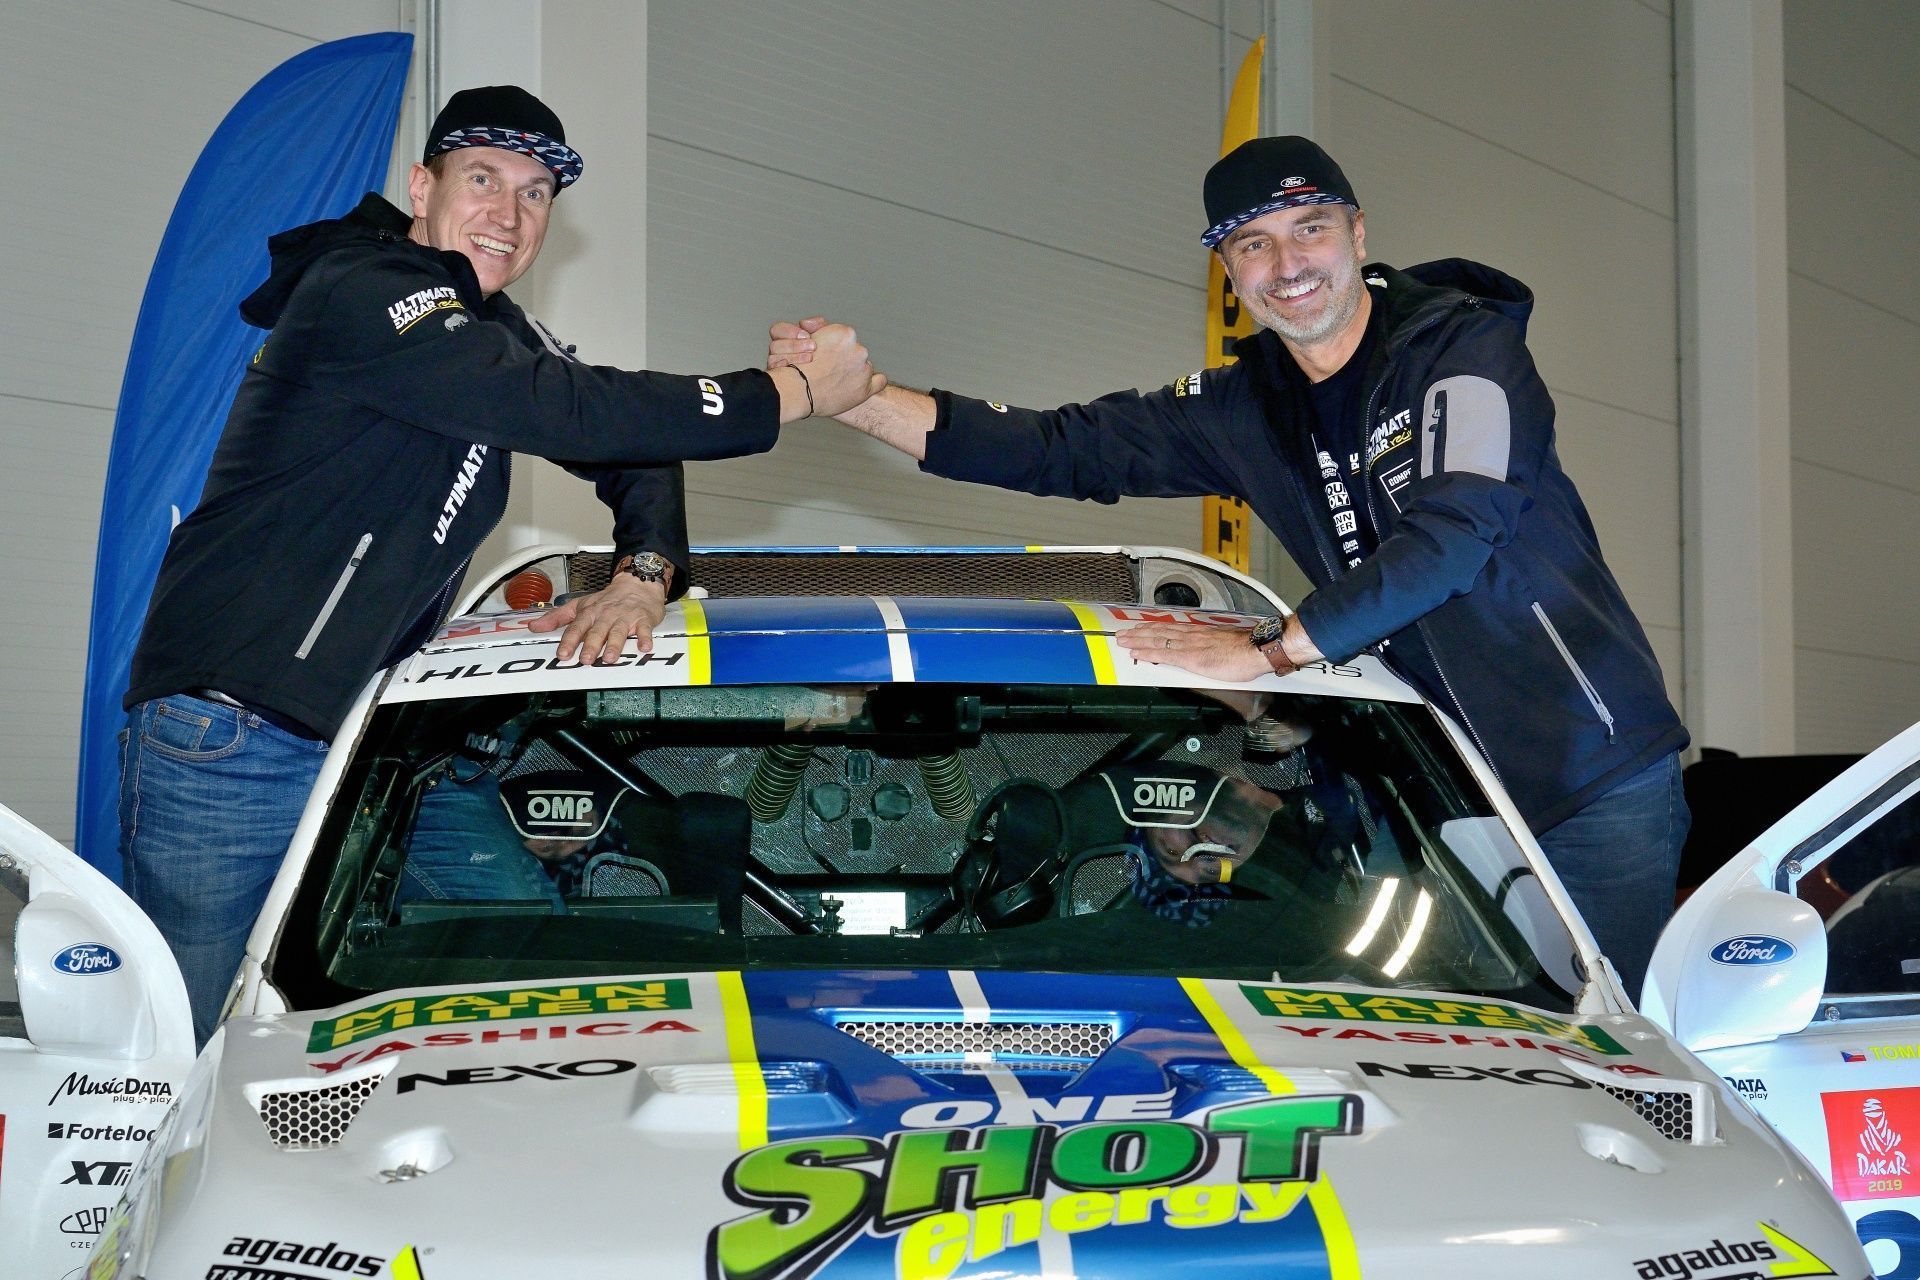 Tomáš Ouředníček (vpravo) a David Křípal před Rallye Dakar 2020